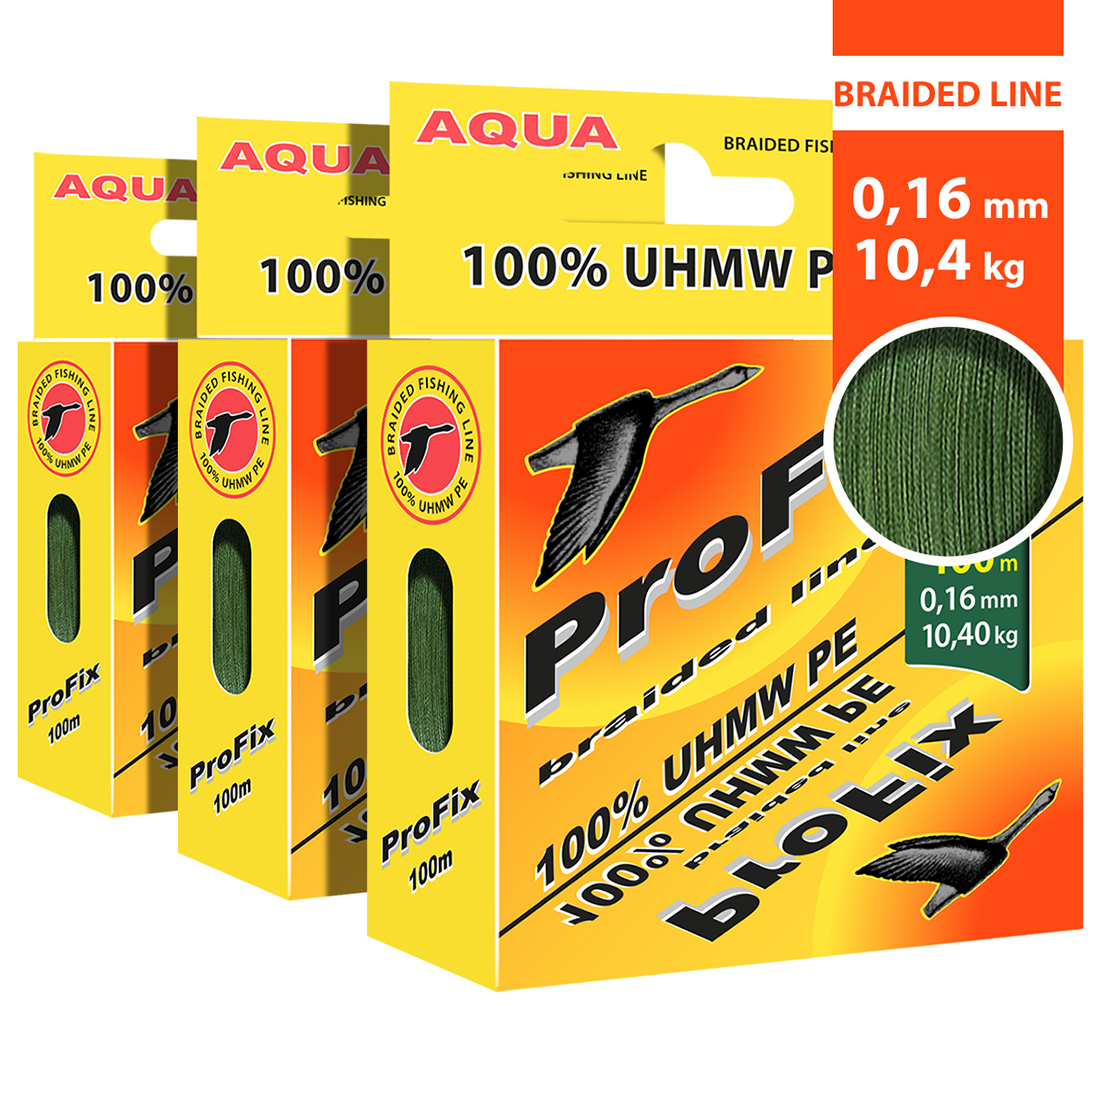 фото Плетеный шнур aqua profix dark-green 0,16mm 100m, зеленый, test - 10,40kg (набор 3 шт)